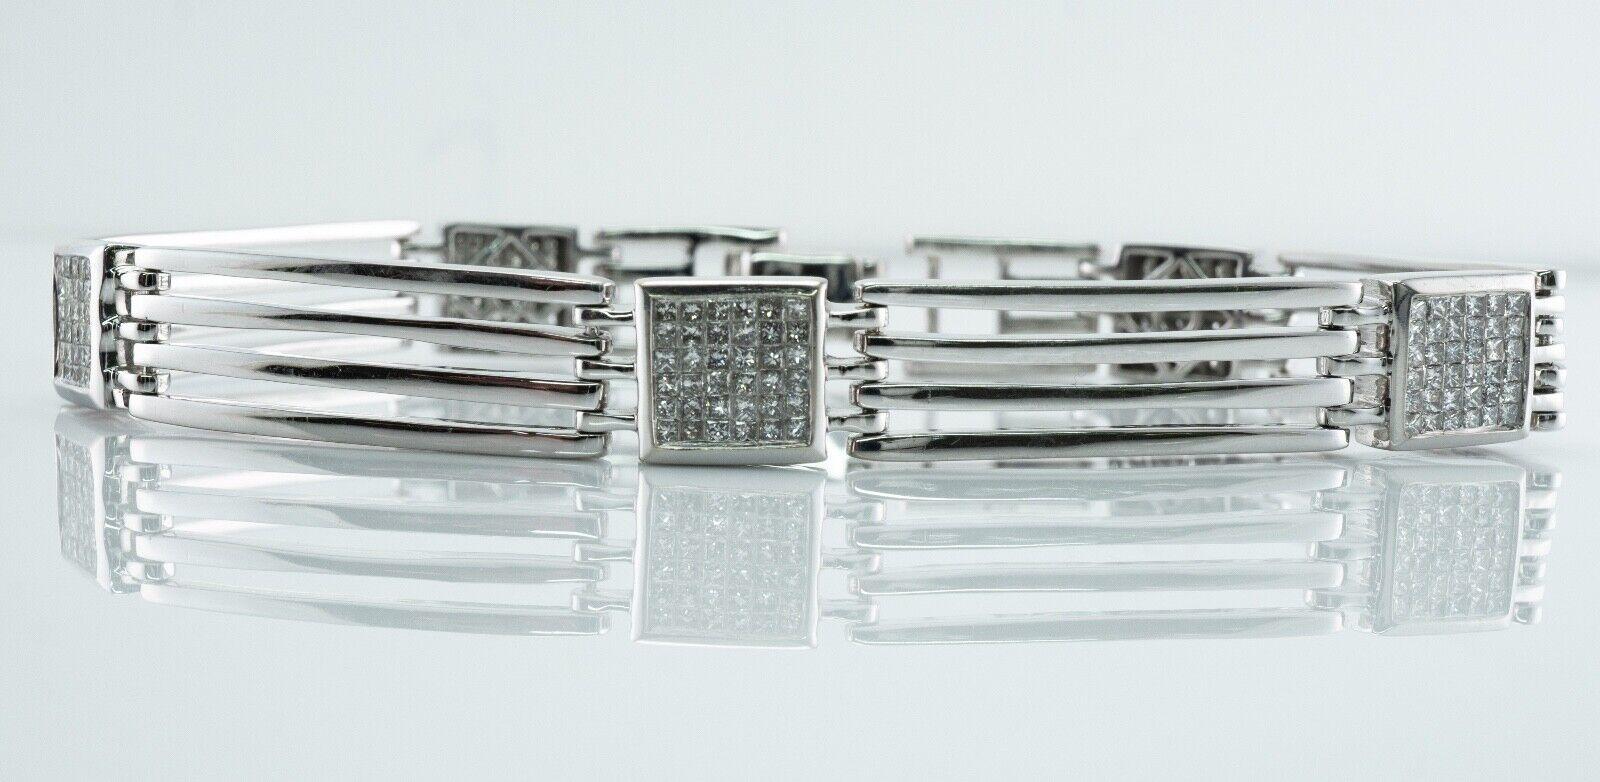 Bracelet pour hommes en or blanc 14 carats, géométrique 3,60 TDW 8,25 po.

Ce bracelet estate pour homme est réalisé en or blanc massif 14K.
Ce bracelet contient 180 diamants de taille princesse.
Les diamants sont de pureté SI1-SI2 et de couleur H